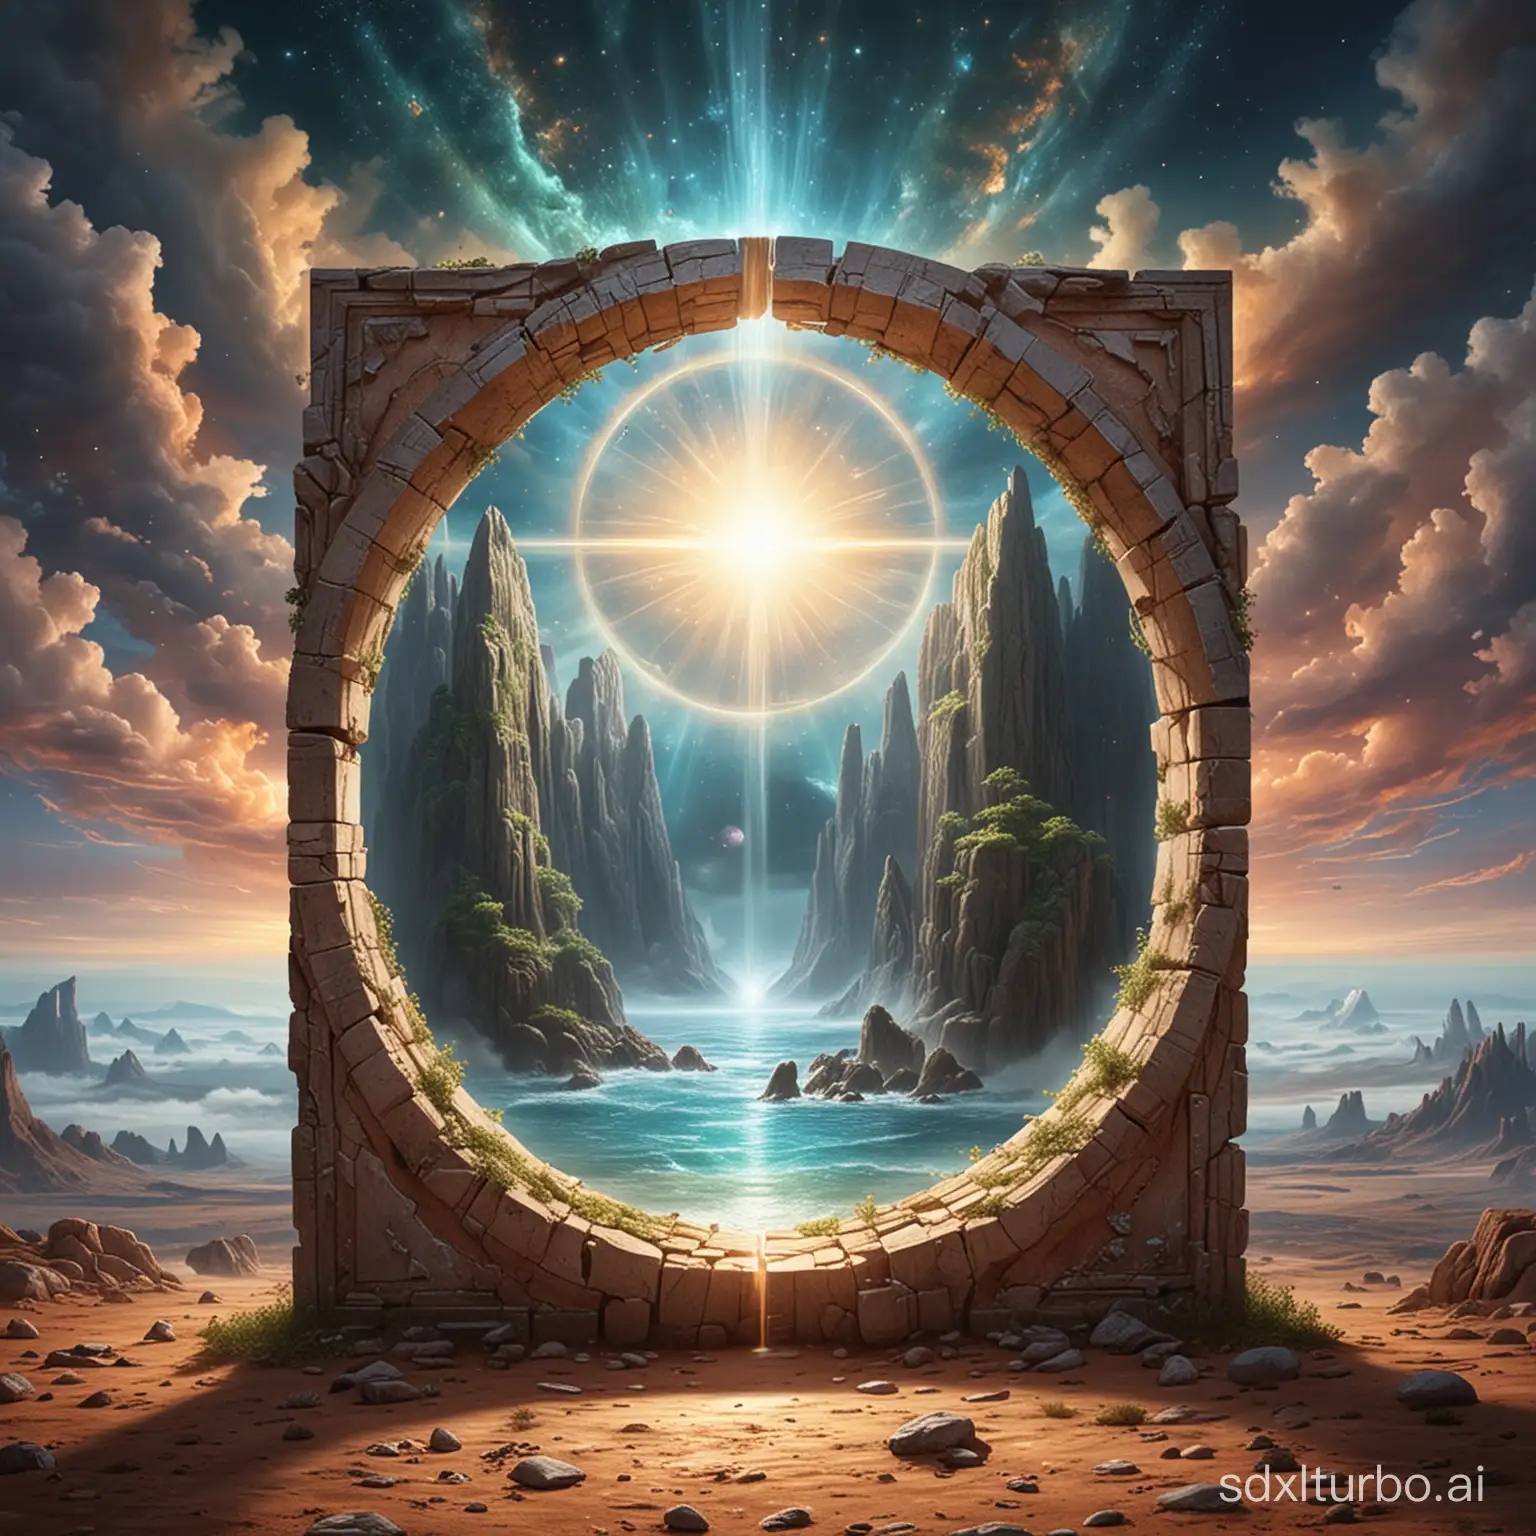 Portal imaginario que representa el mundo terrenal con el mundo espiritual. La materialización de la transición permite la existencia de la vida